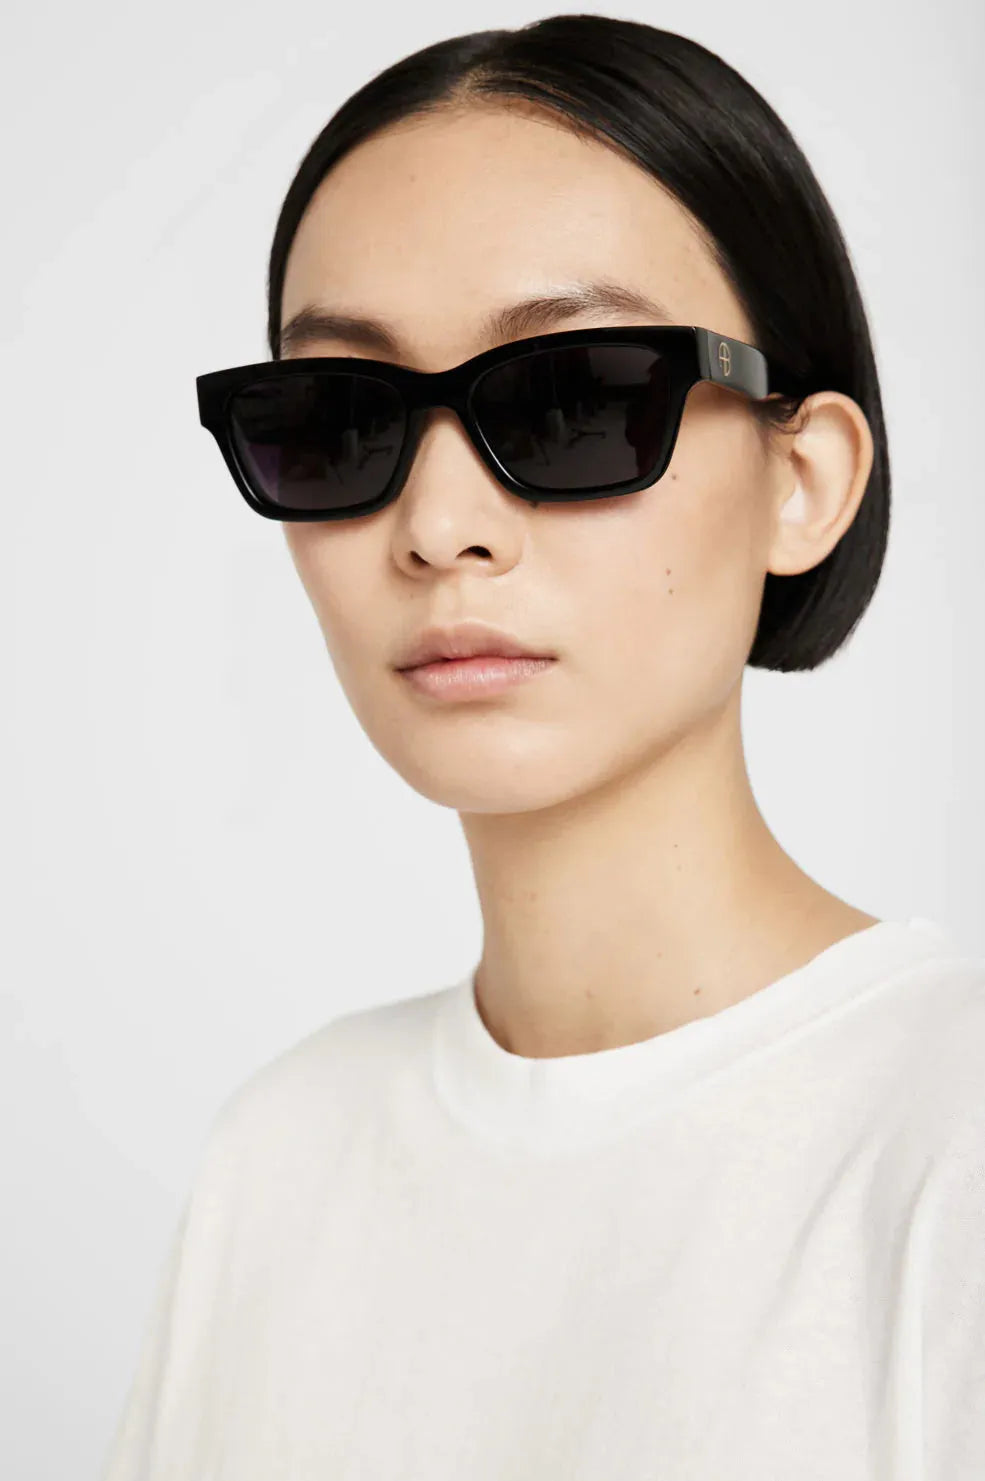 Solbriller ANINE BING Daria Sunglasses, sort -